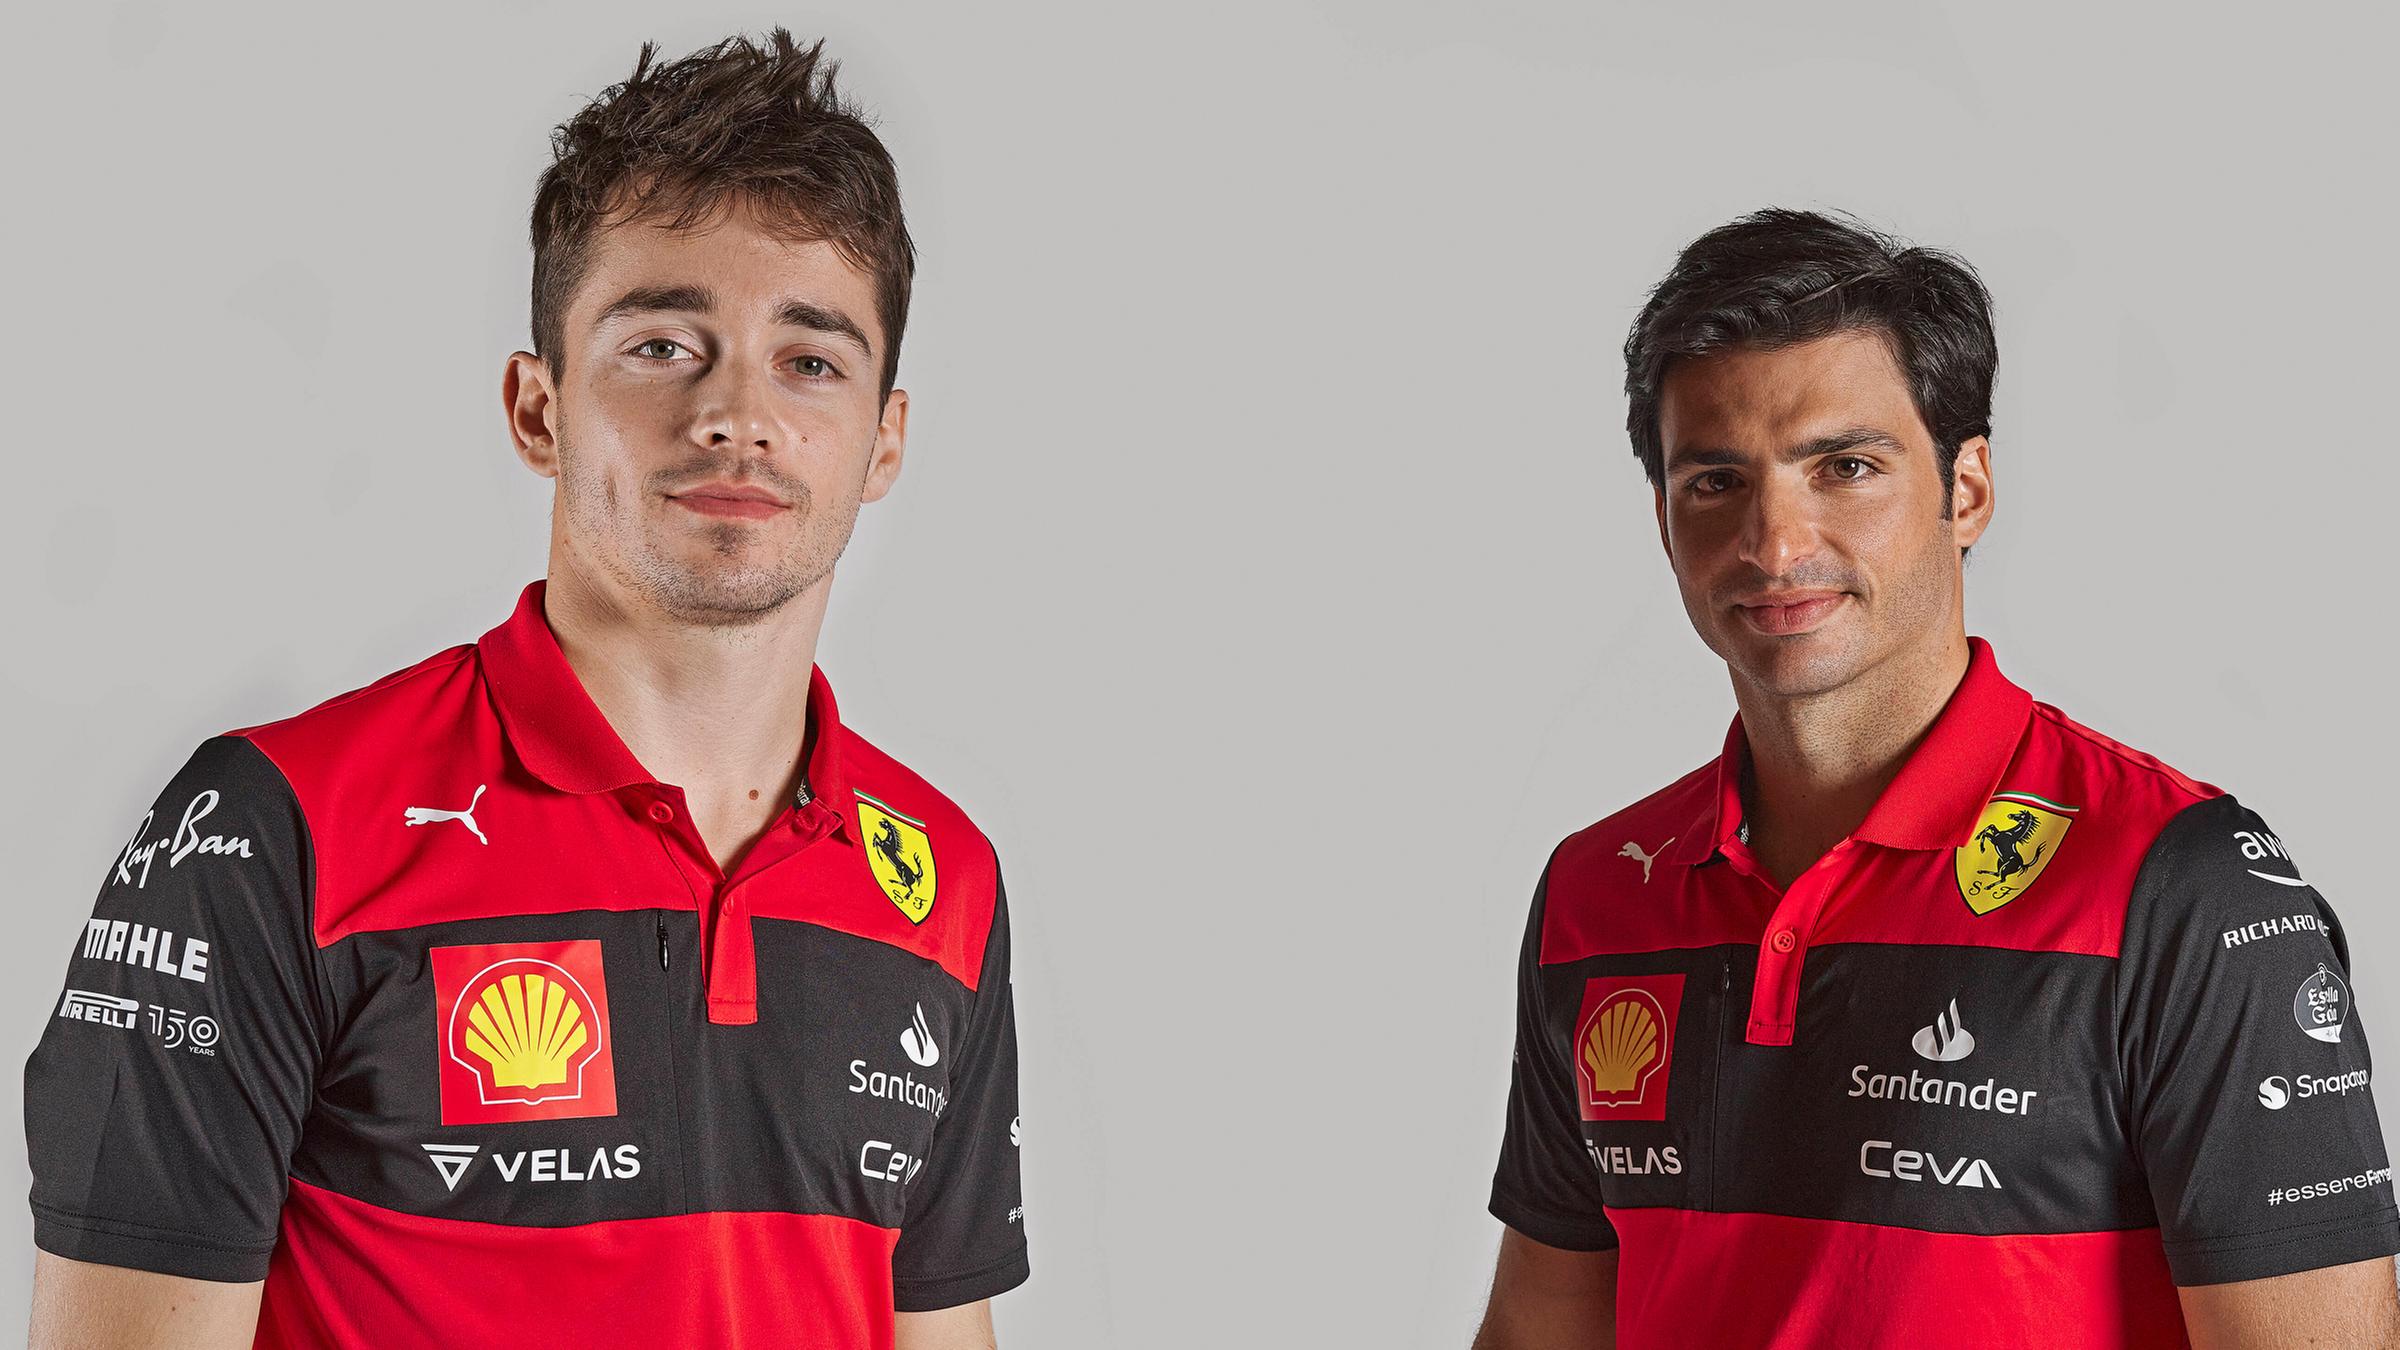 Ferrari drivers Charles Leclerc and Carlos Sainz, 17.02.2022.